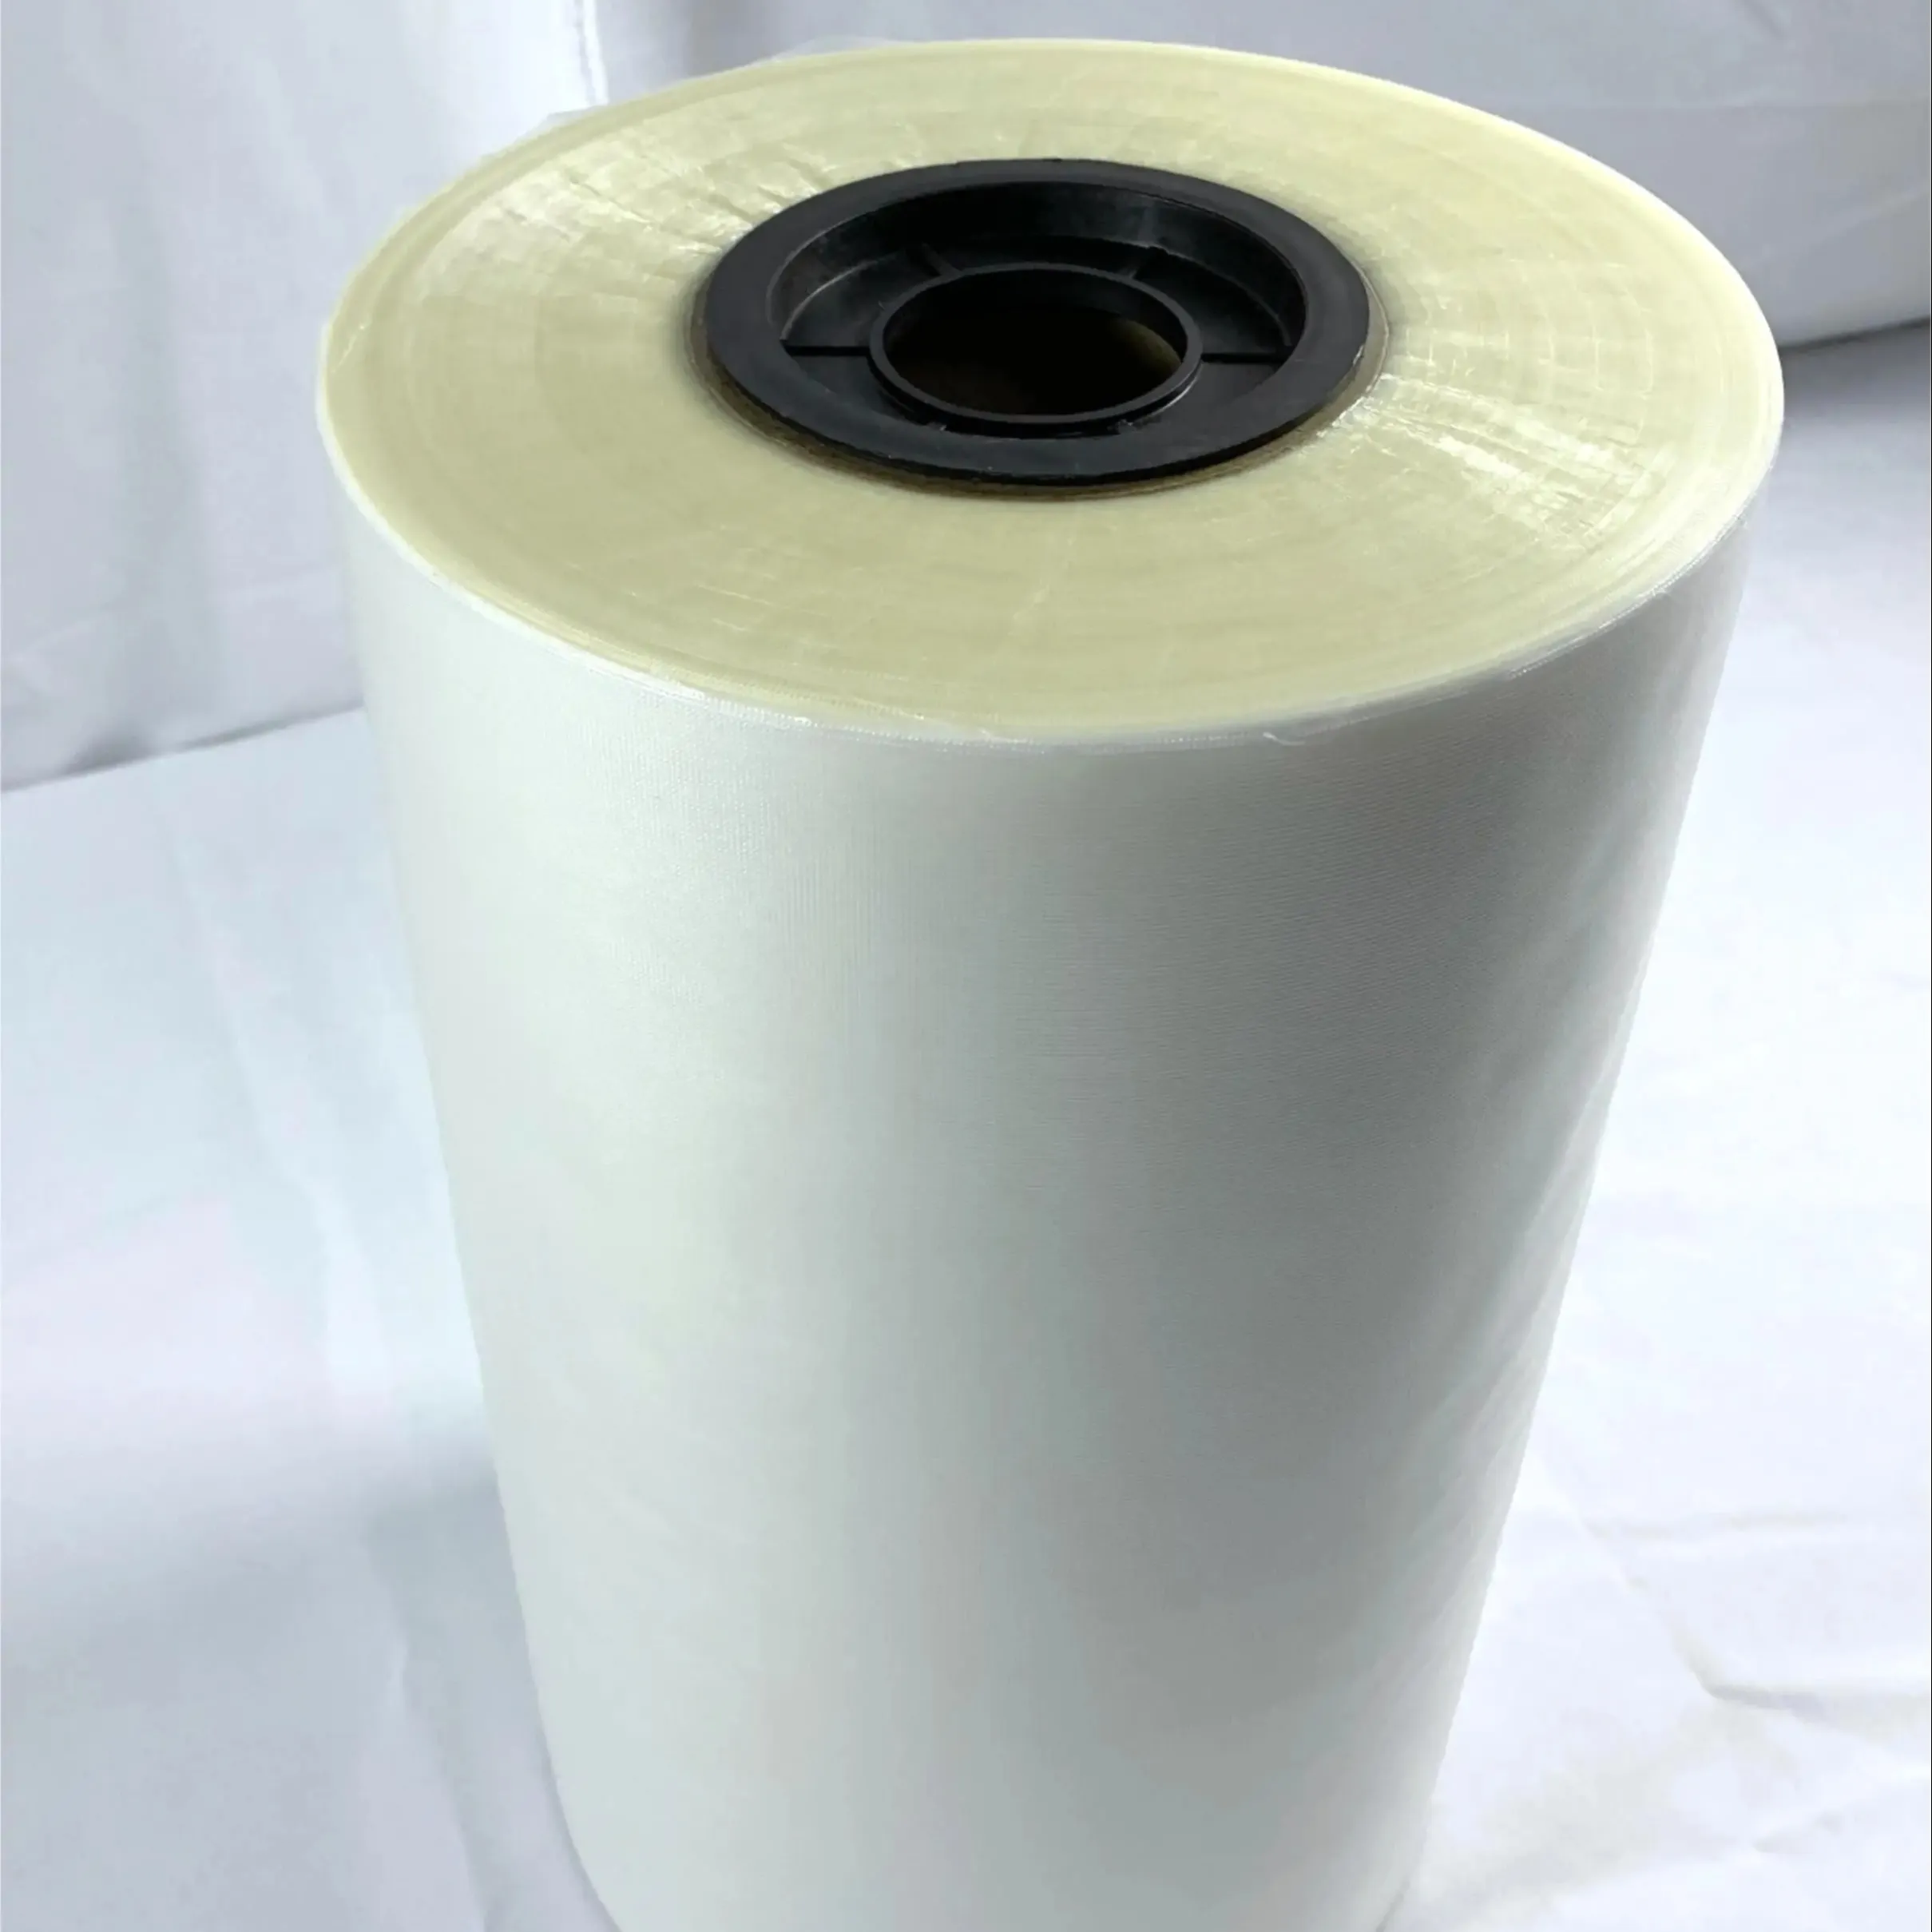 Filme membrana solúvel em água fria filme Pva para lavanderia vagens embalagem pesticidas fertilizantes e sementes embalagens